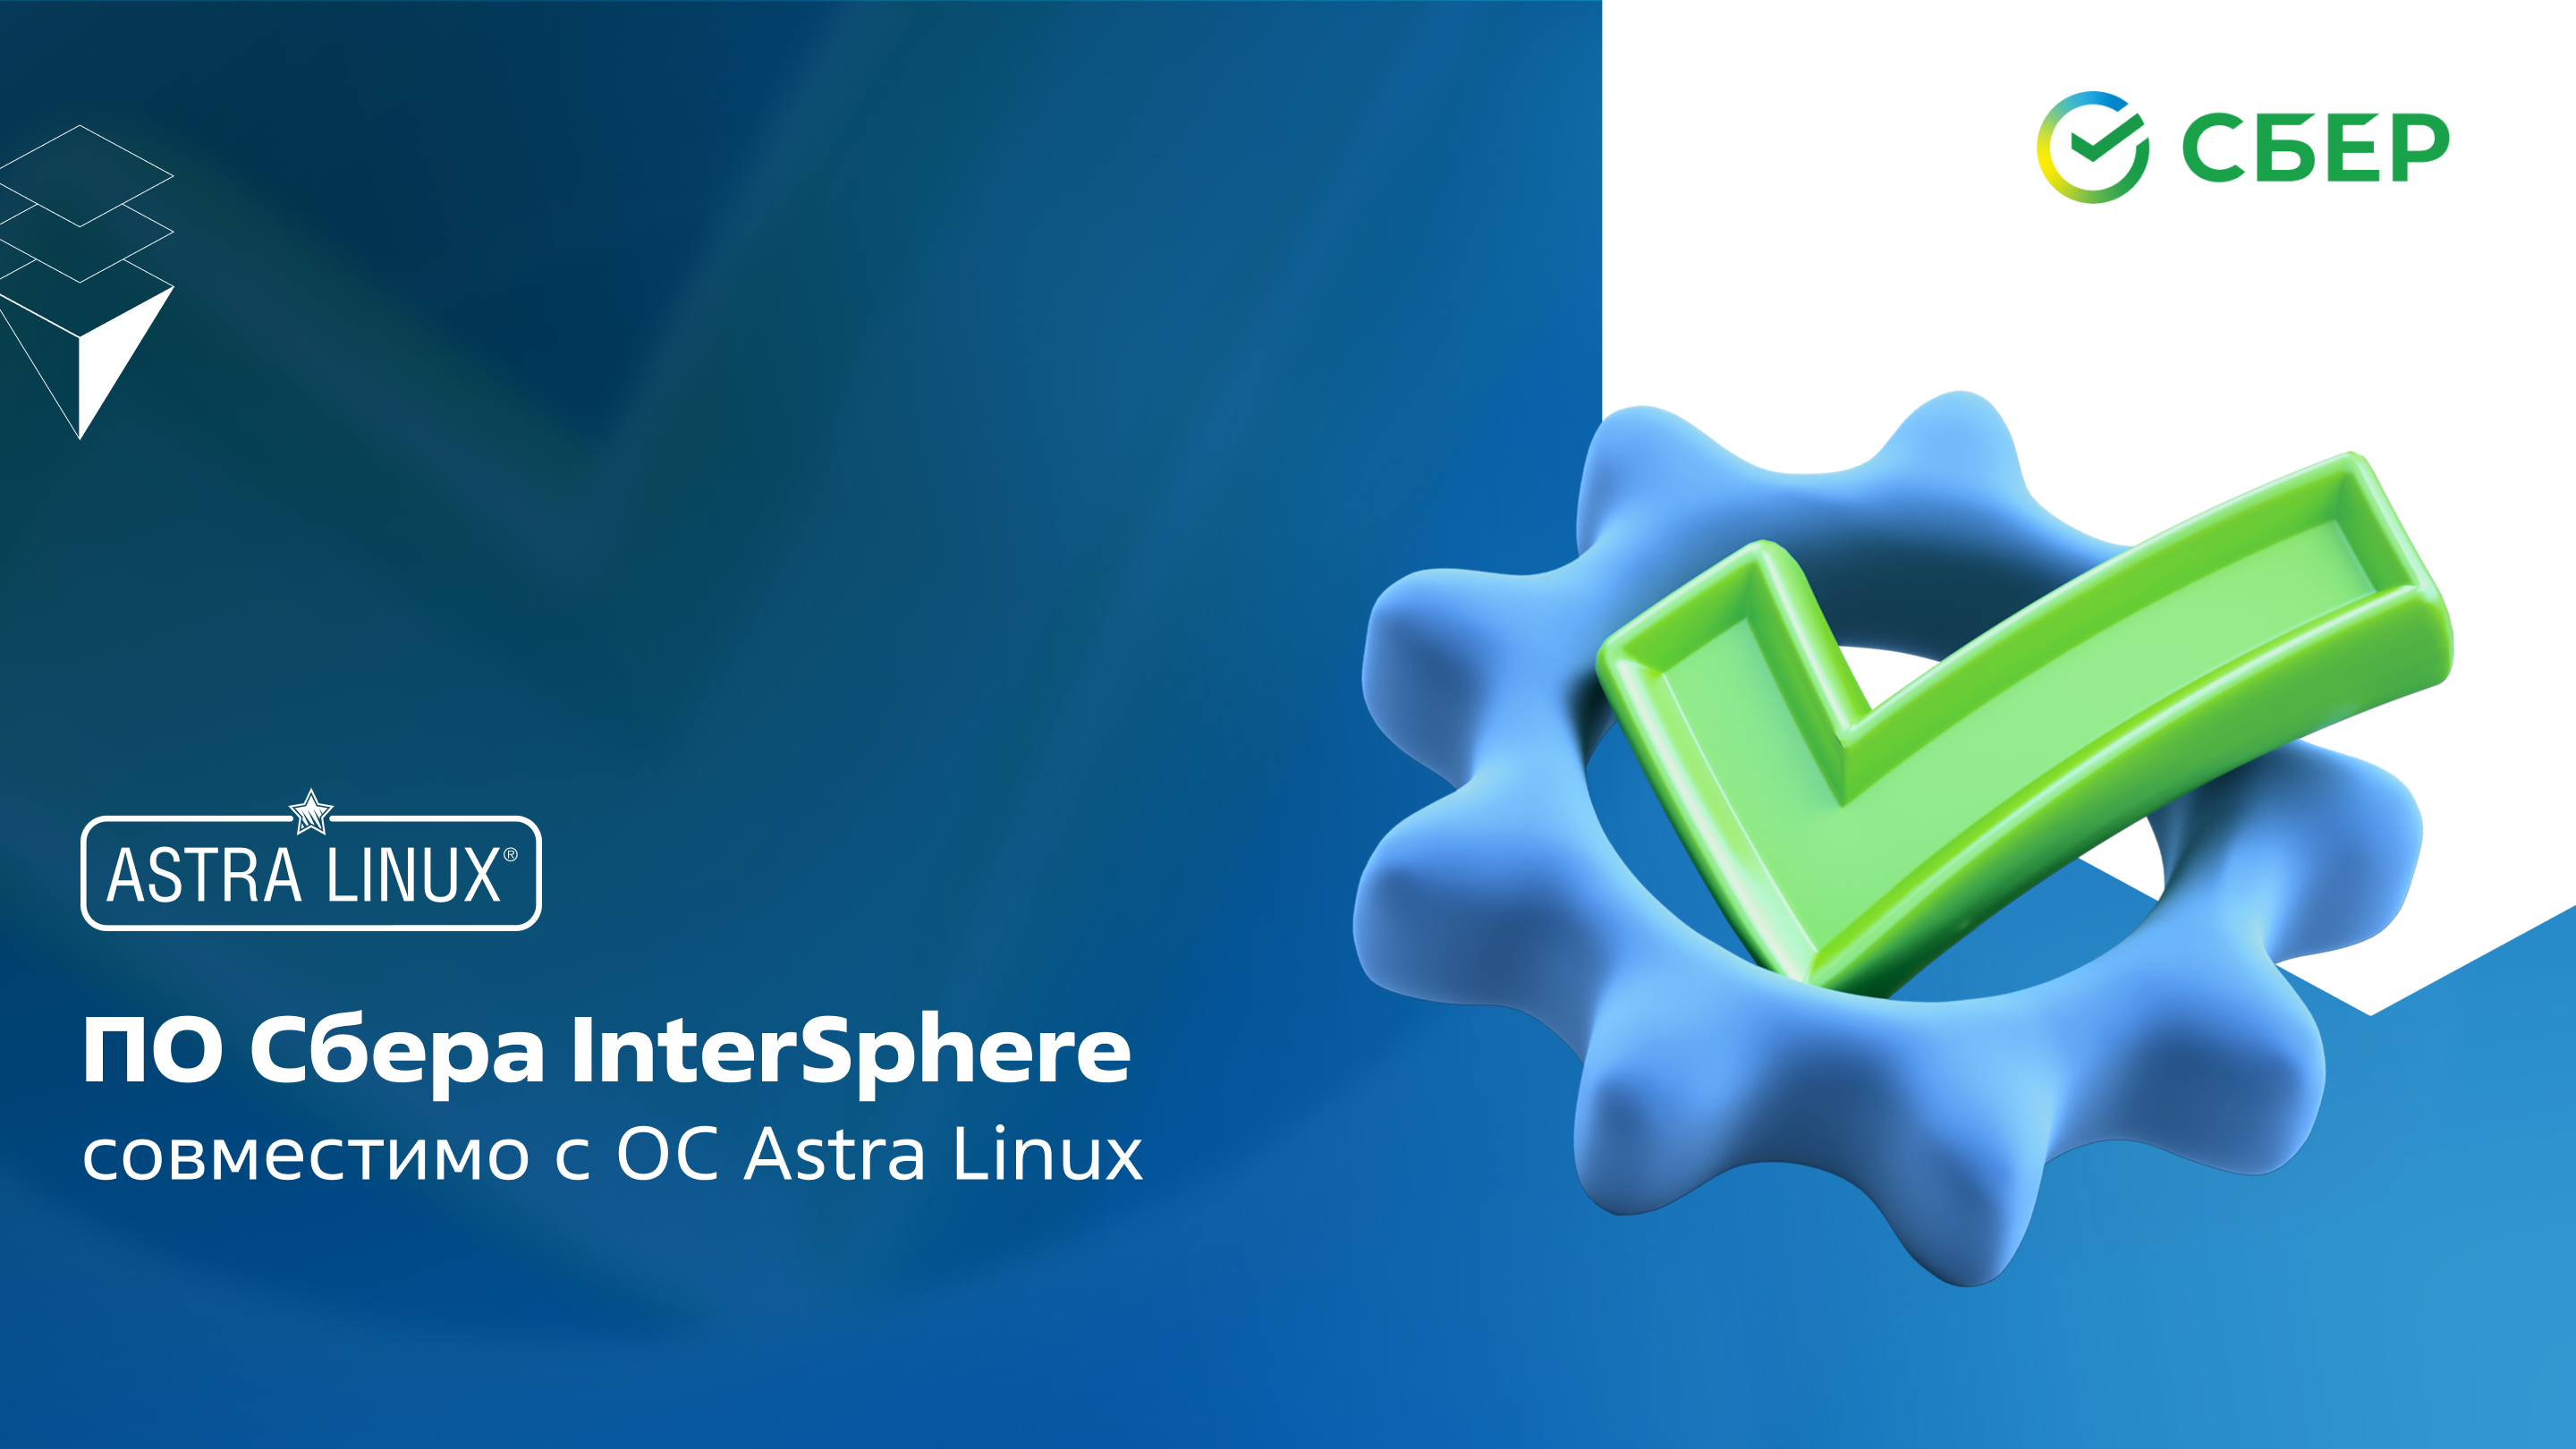 Astra Linux сообщила о совместимости ПО «Сбера» InterSphere со своей операционной системой